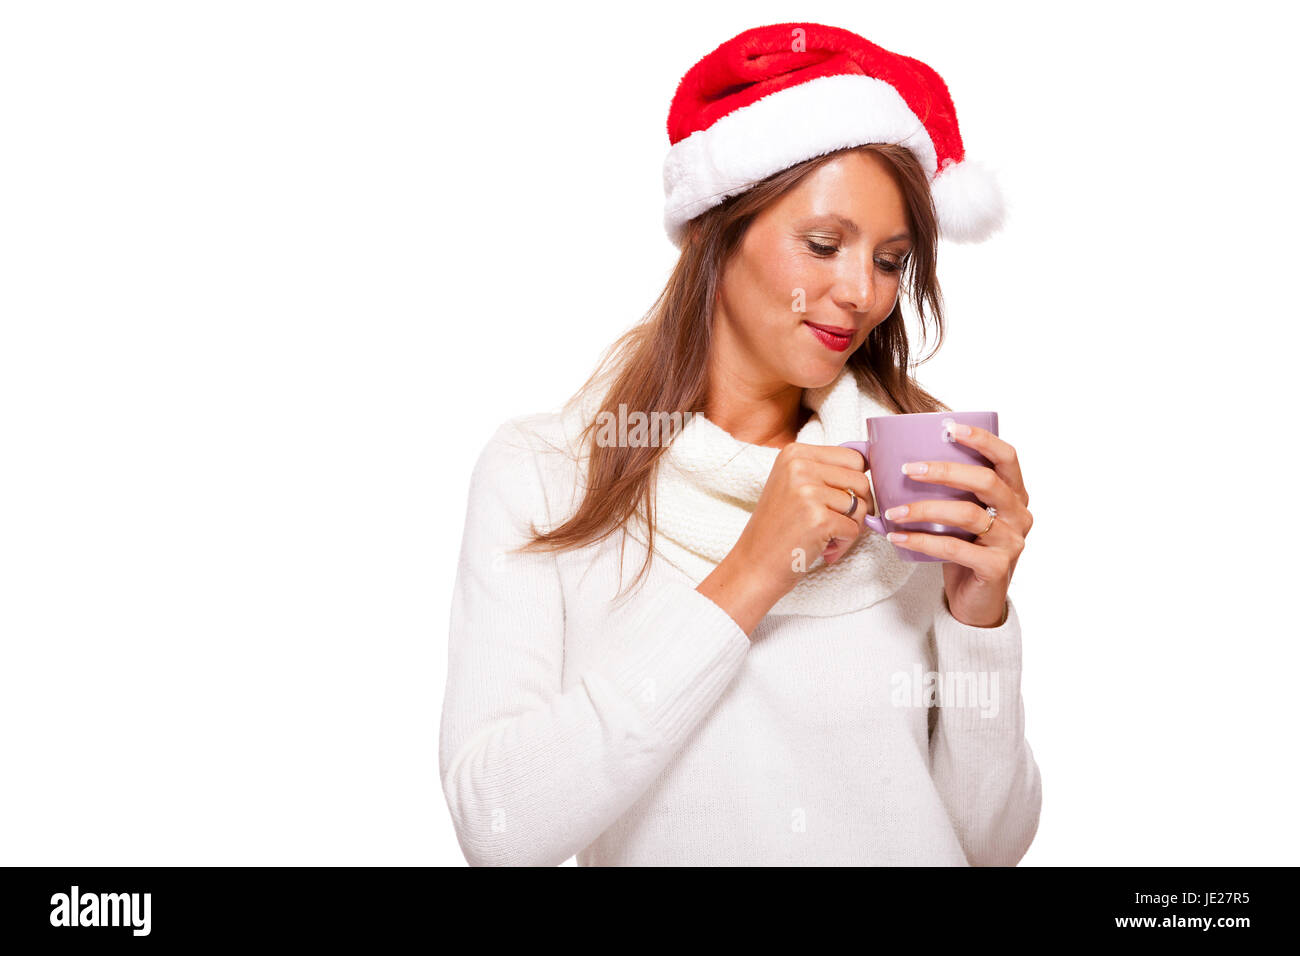 Attraktive junge Frau mit roter Nikolausmütze trinkt einen heißen Becher Kaffee den sie in ihren Händen wiegt um Ihre Hände zu wärmen Isoliert Freisteller Foto de stock